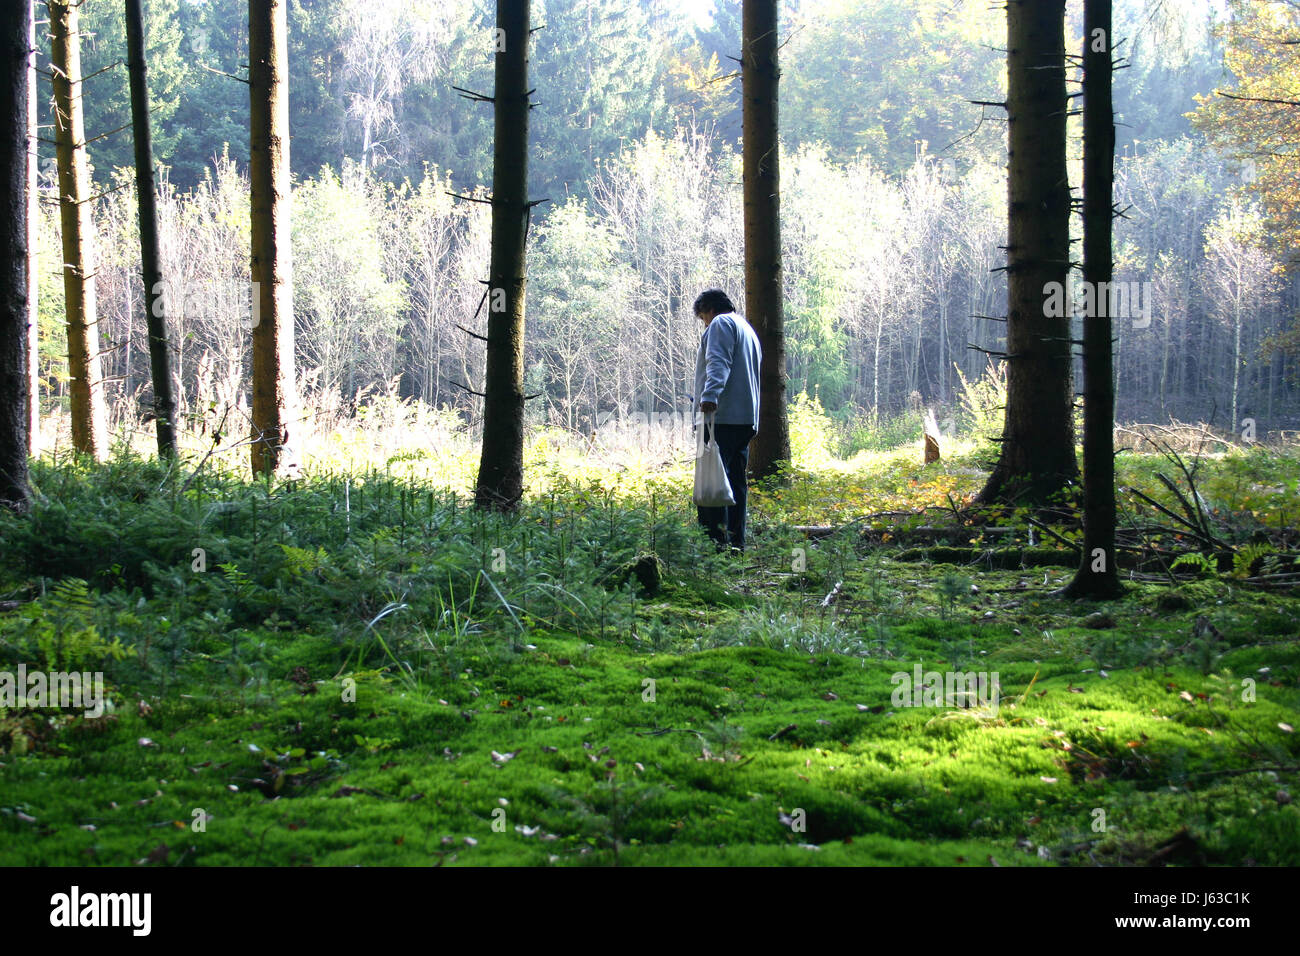 Arbre arbres champignons recherche trouver collecter la collecte des forêts l'homme arbre arbres vert Banque D'Images